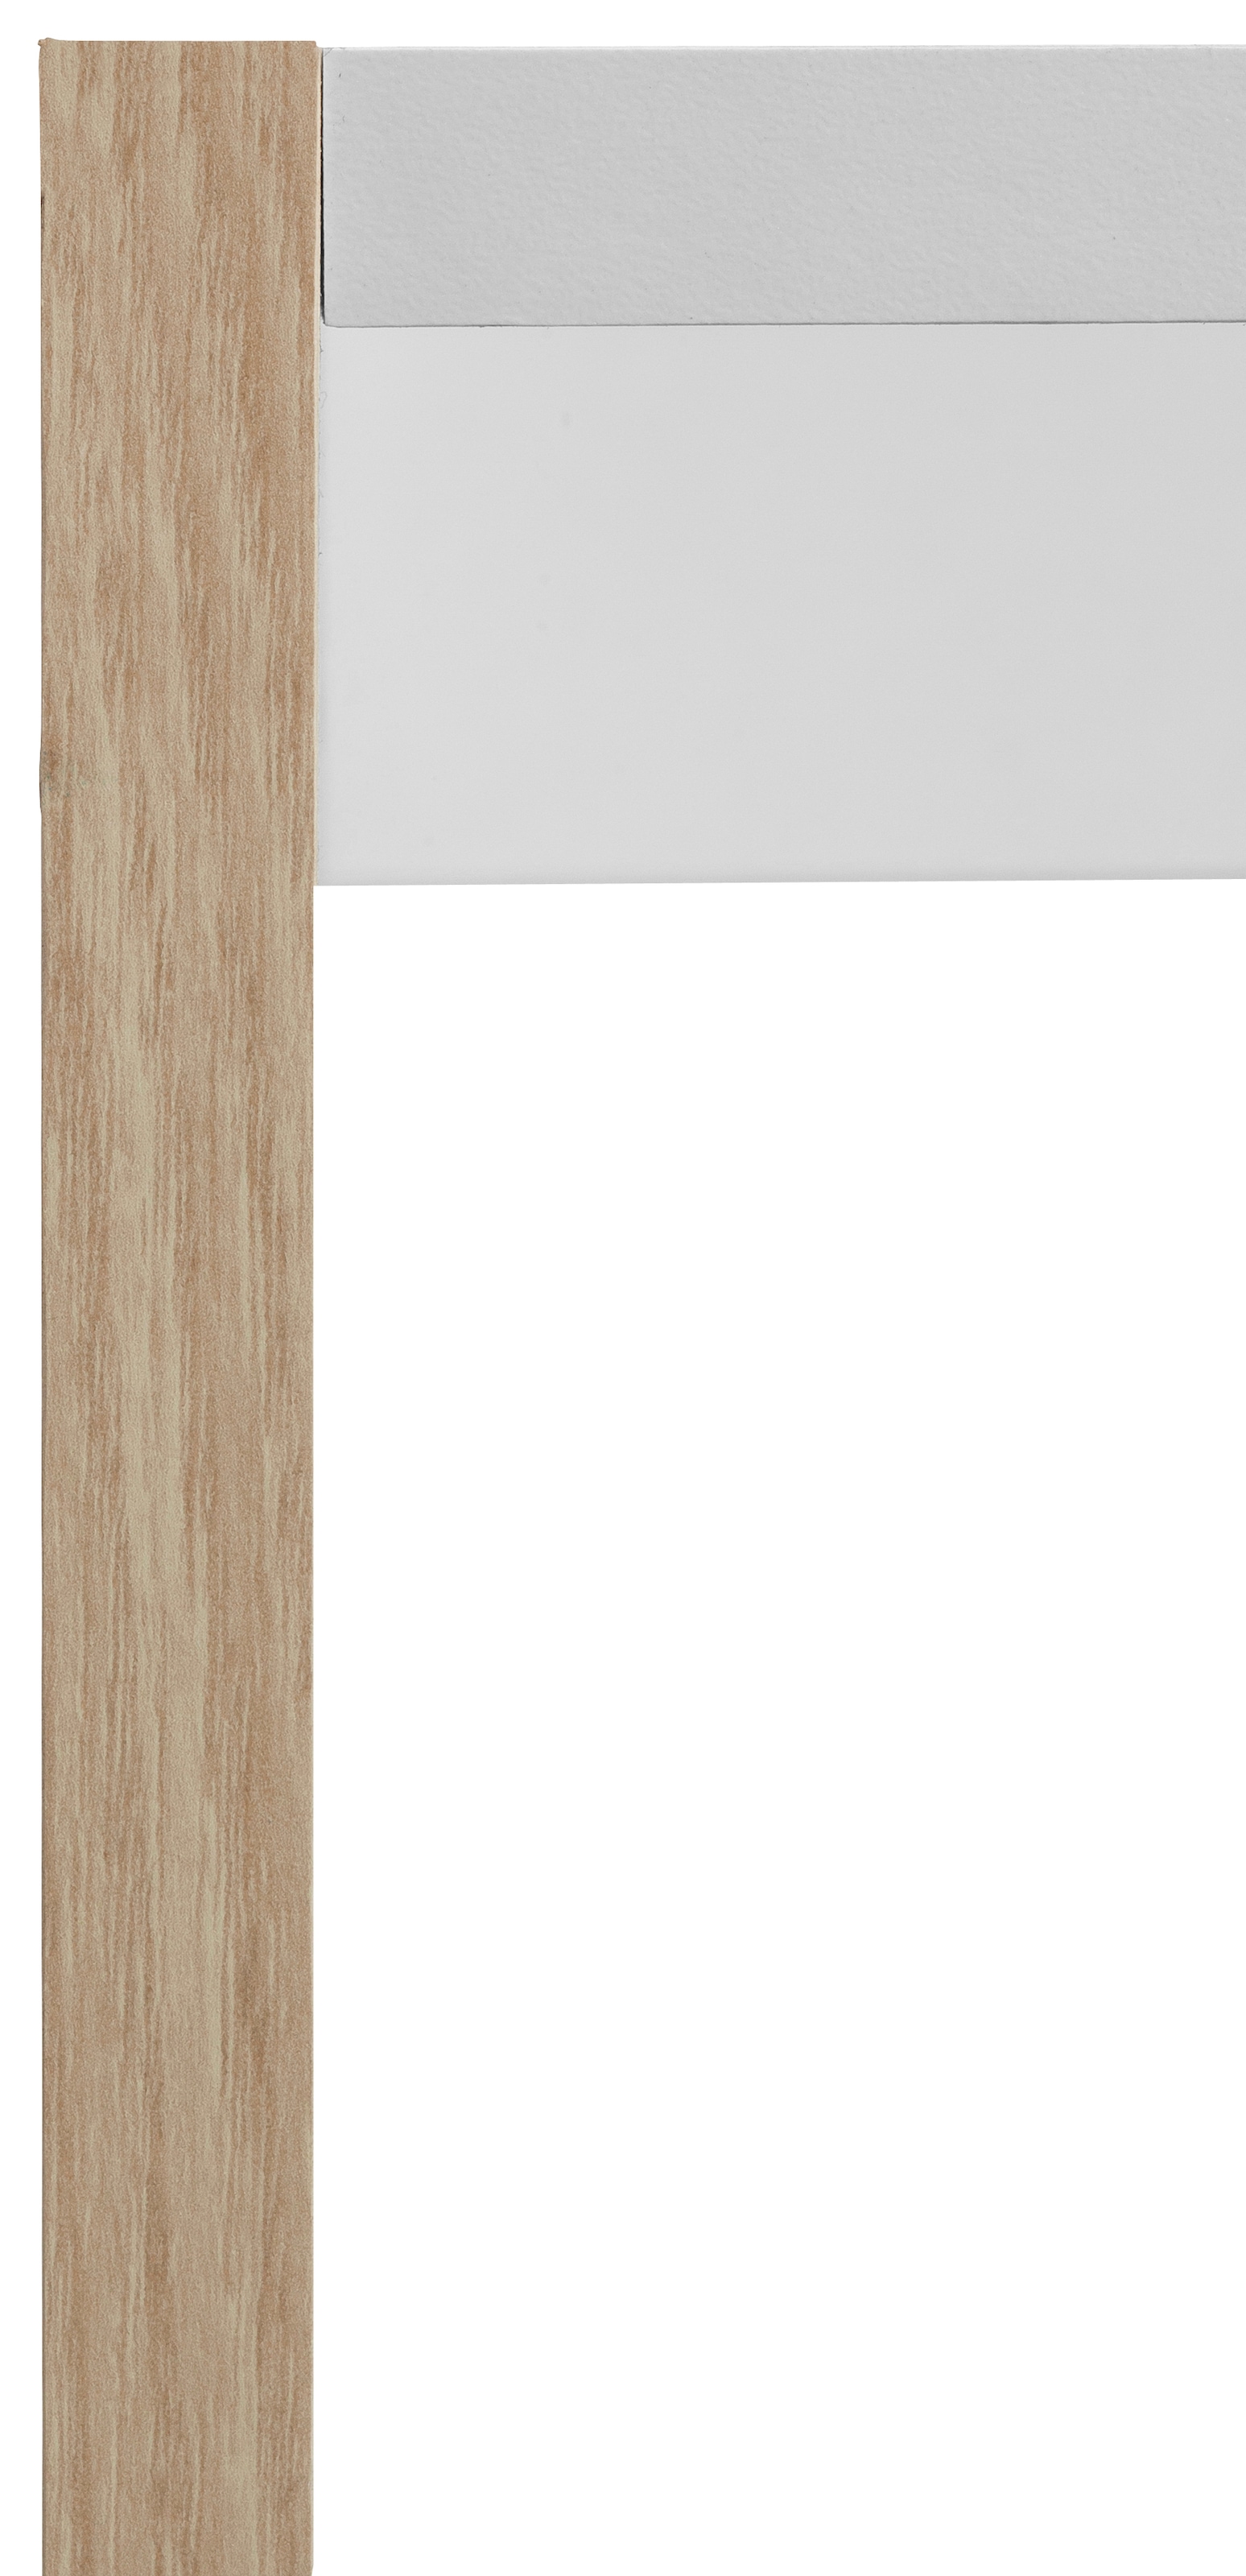 OPTIFIT Backofen/Kühlumbauschrank »Bern«, 60 cm breit, 176 cm hoch, höhenverstellbare Stellfüsse, mit Metallgriff